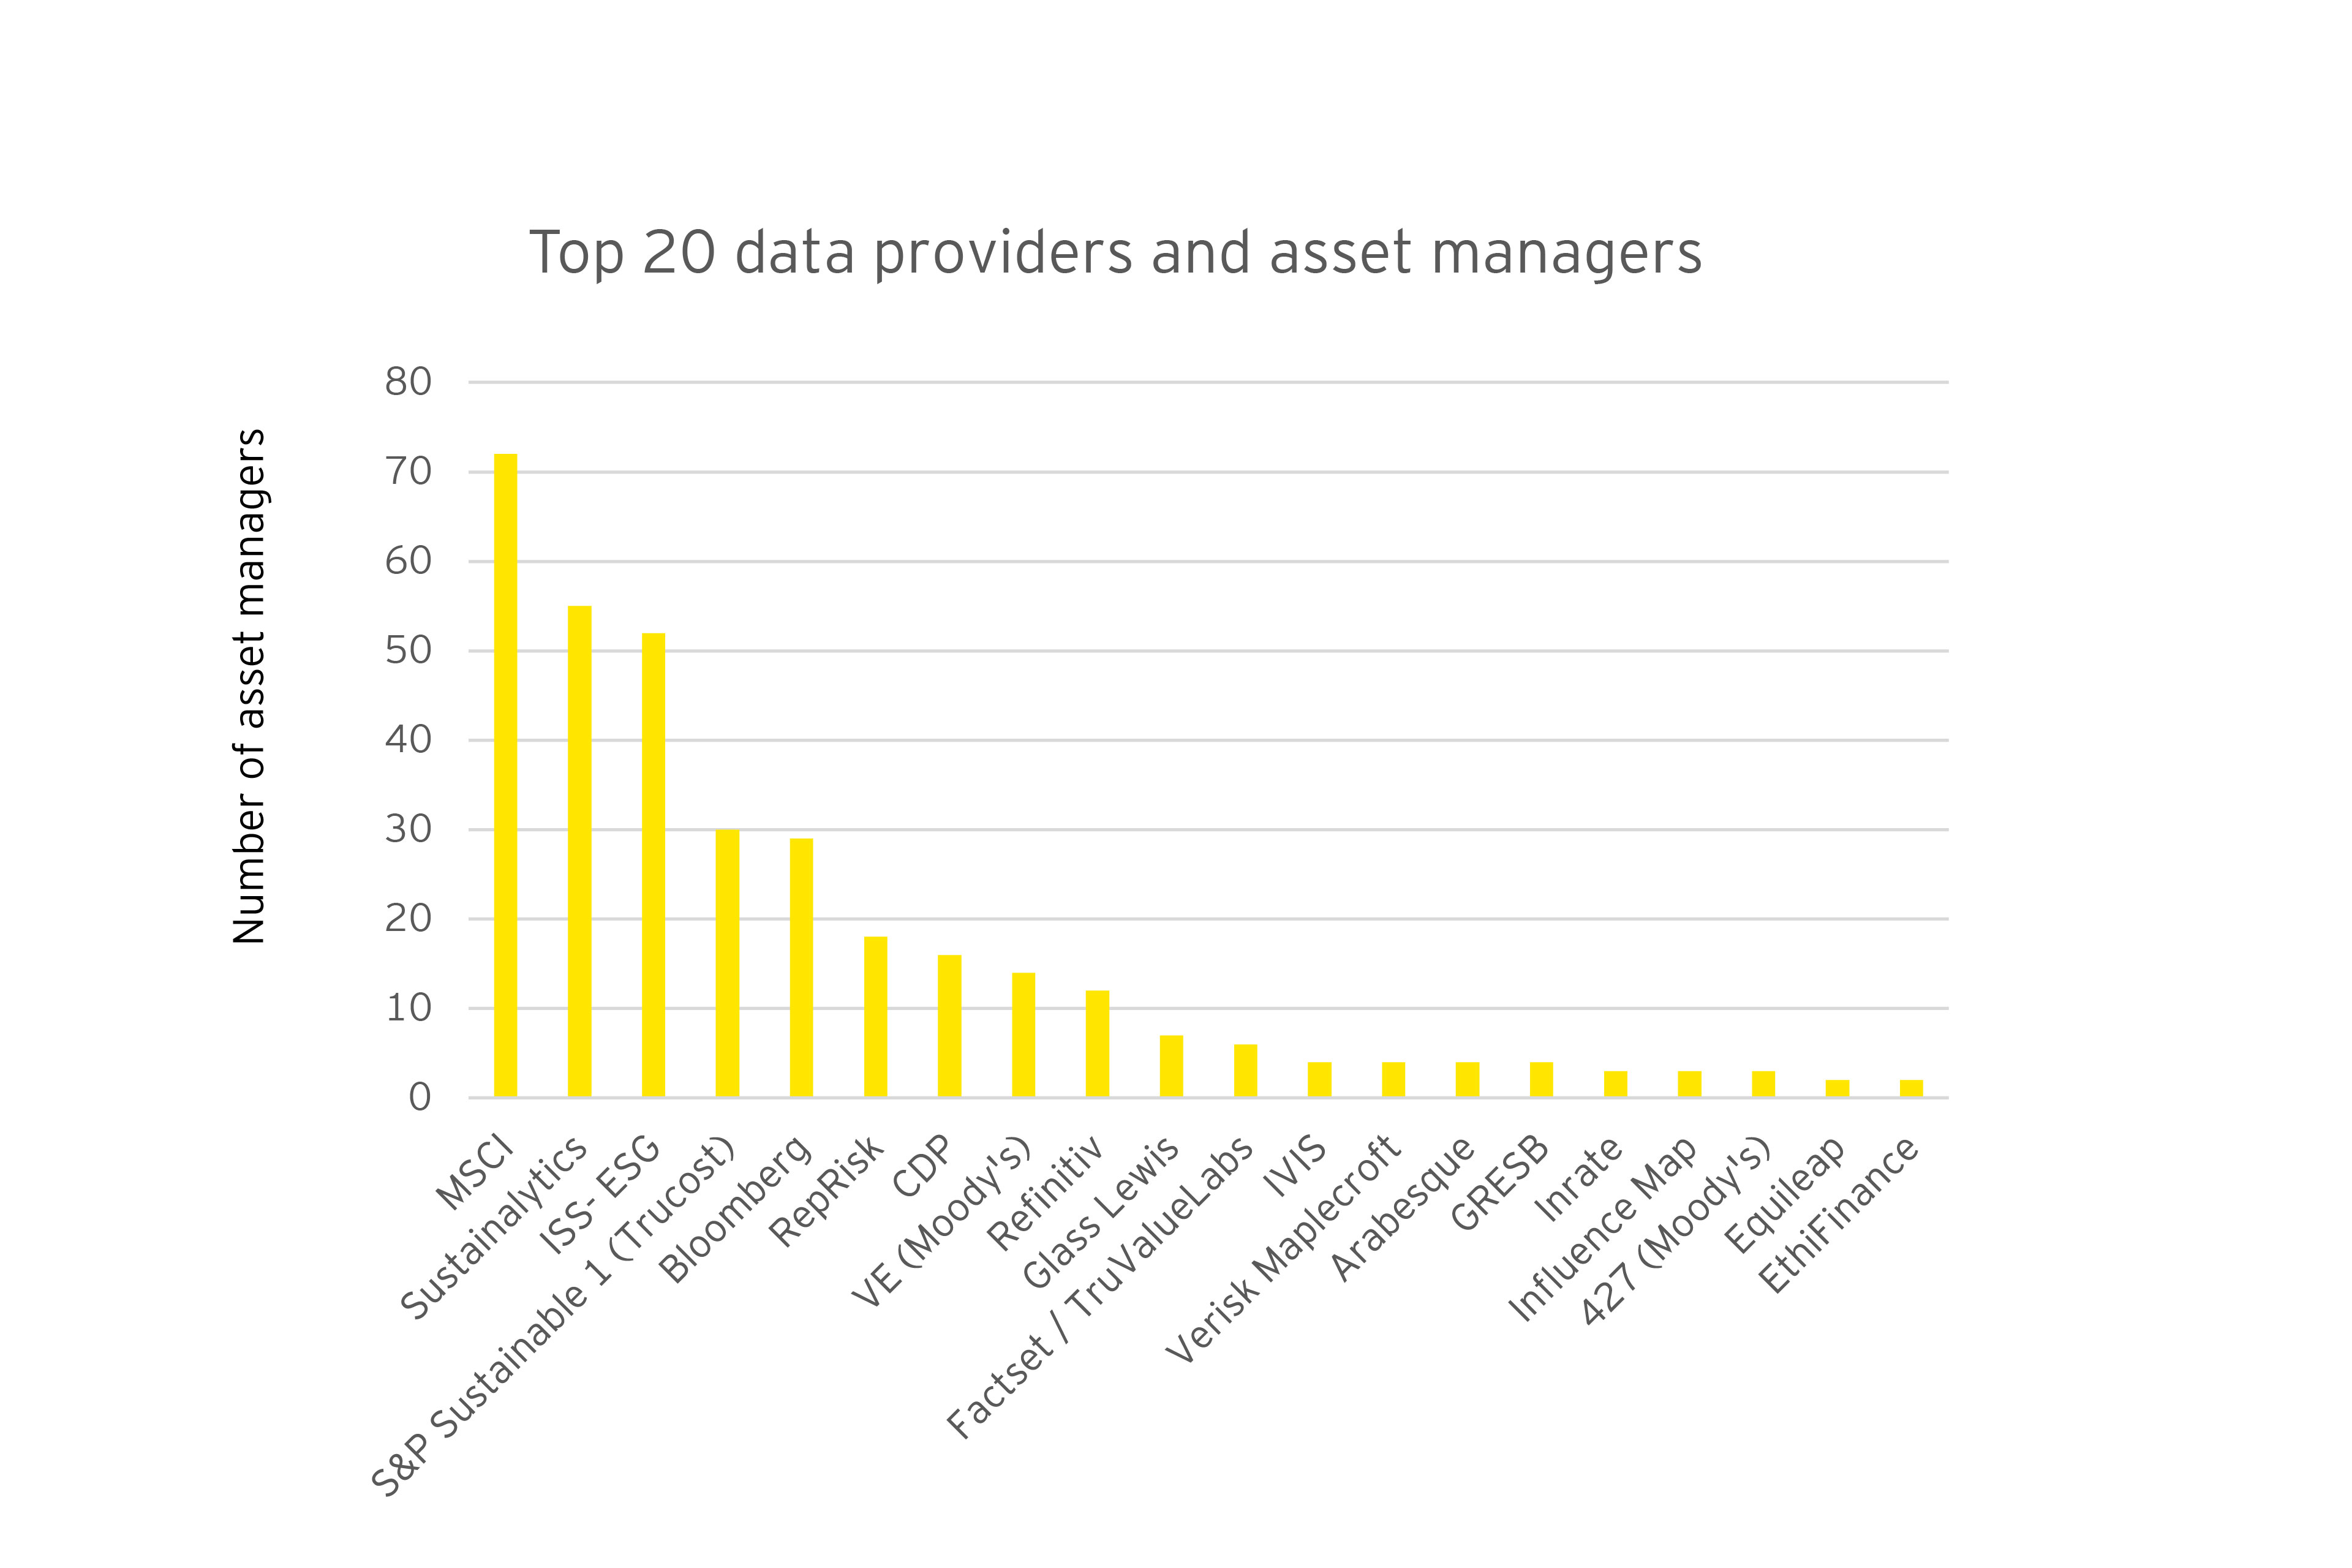 Top 20 poskytovateľov údajov, ktorých služby využívajú správcovia aktív